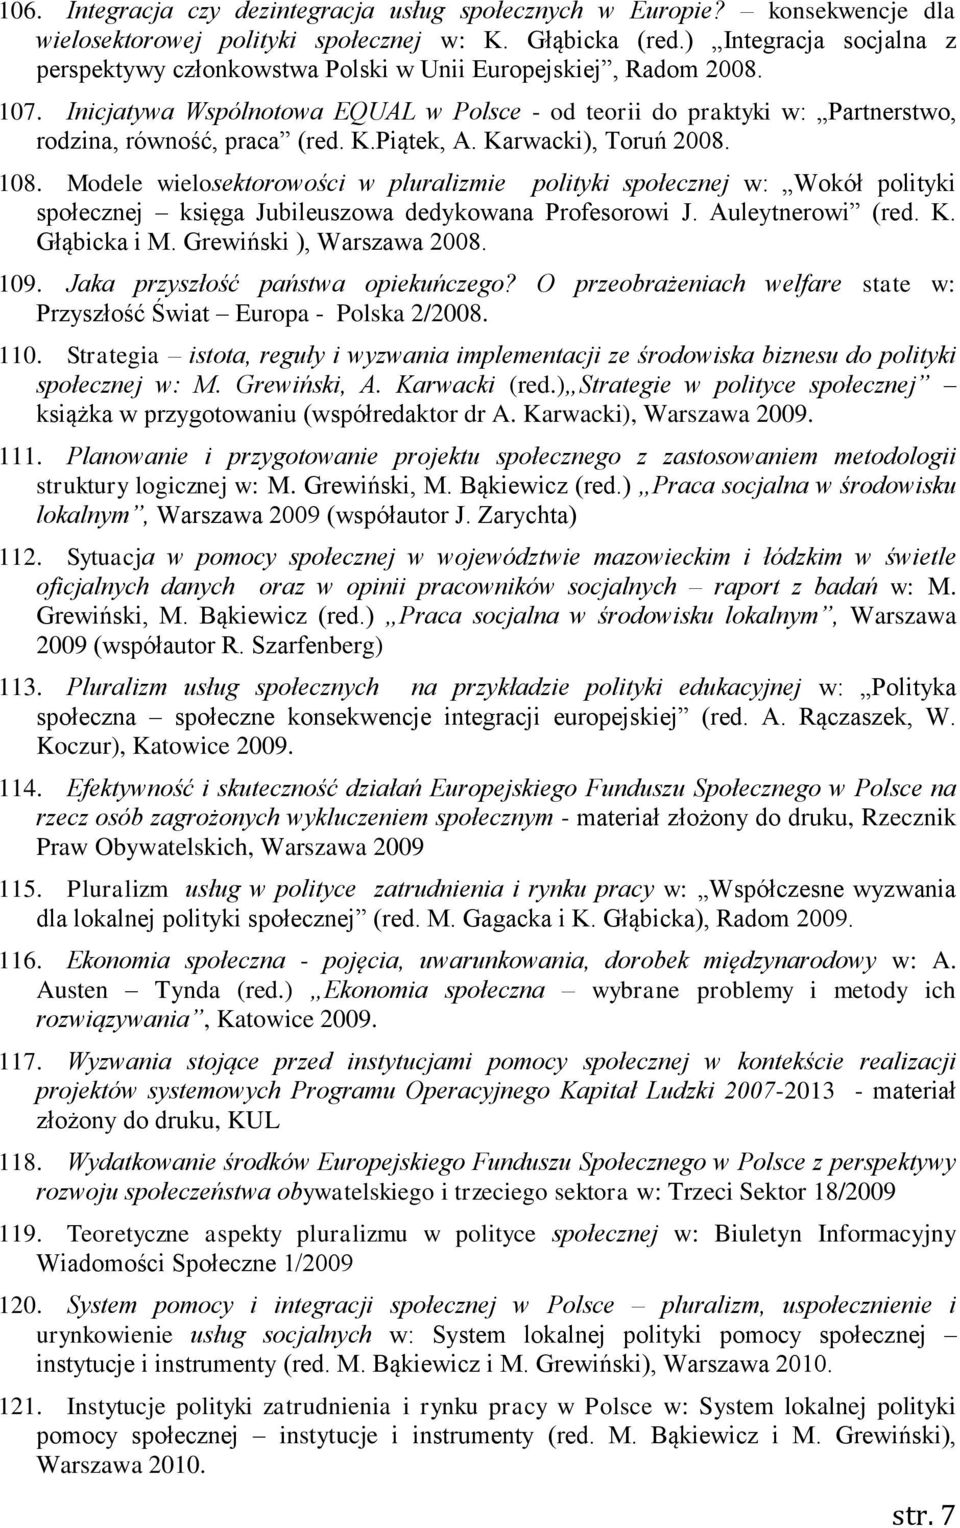 Inicjatywa Wspólnotowa EQUAL w Polsce - od teorii do praktyki w: Partnerstwo, rodzina, równość, praca (red. K.Piątek, A. Karwacki), Toruń 2008. 108.